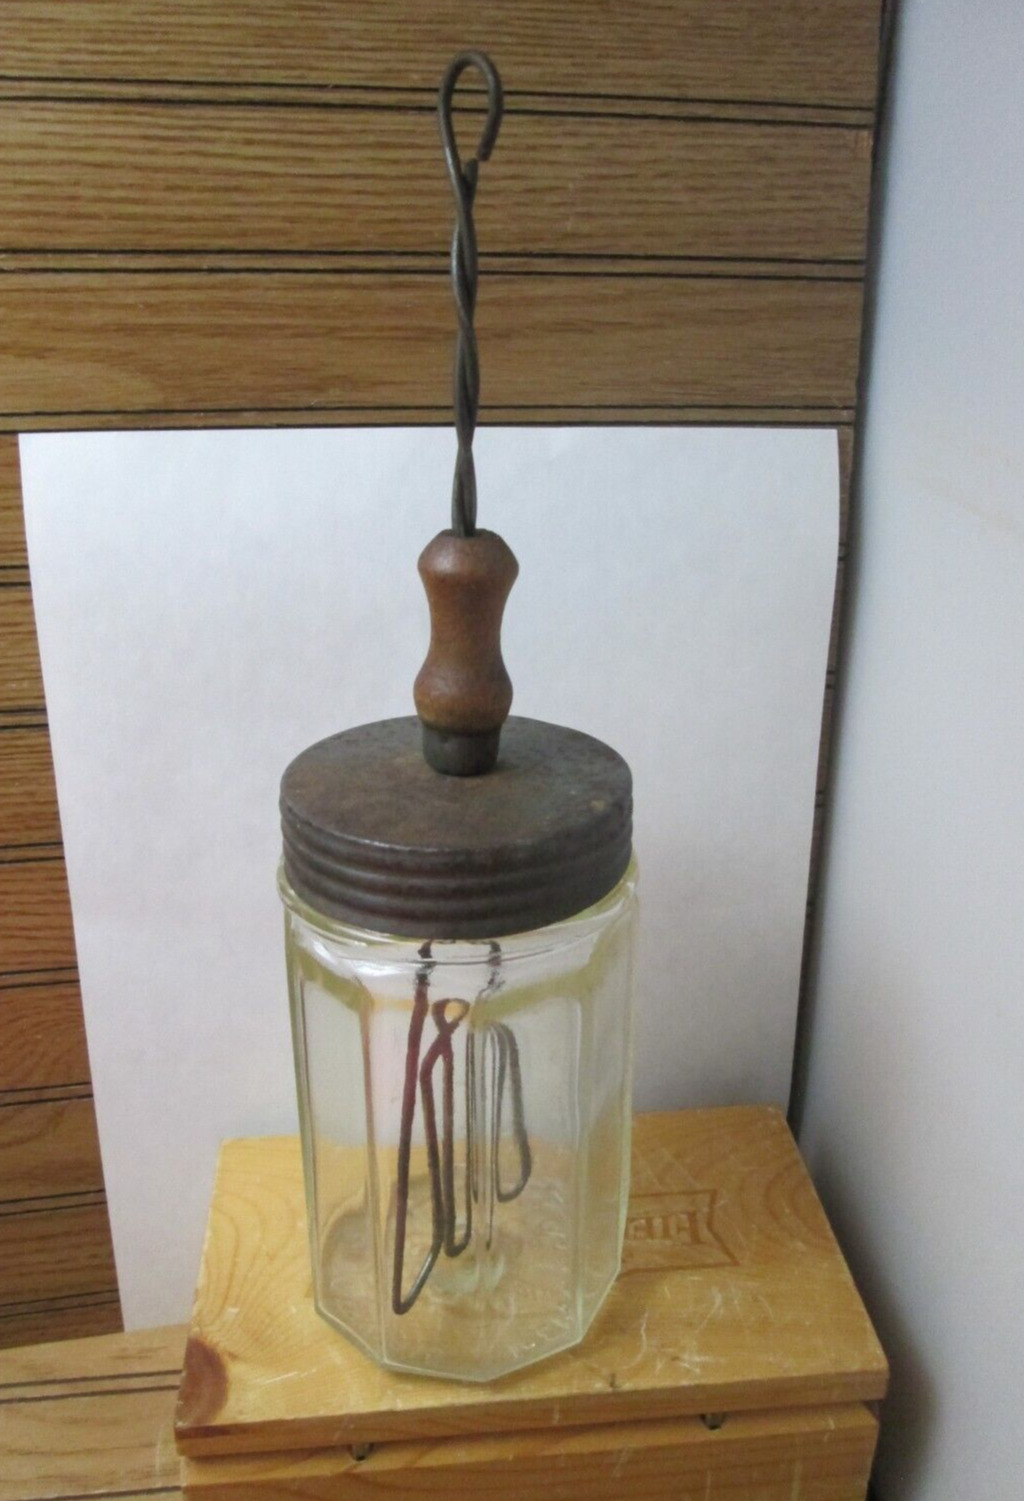 Antique Hand Crank Butter Churn Mixer 1 Pint 2c Original Glass Jar March 30 1915